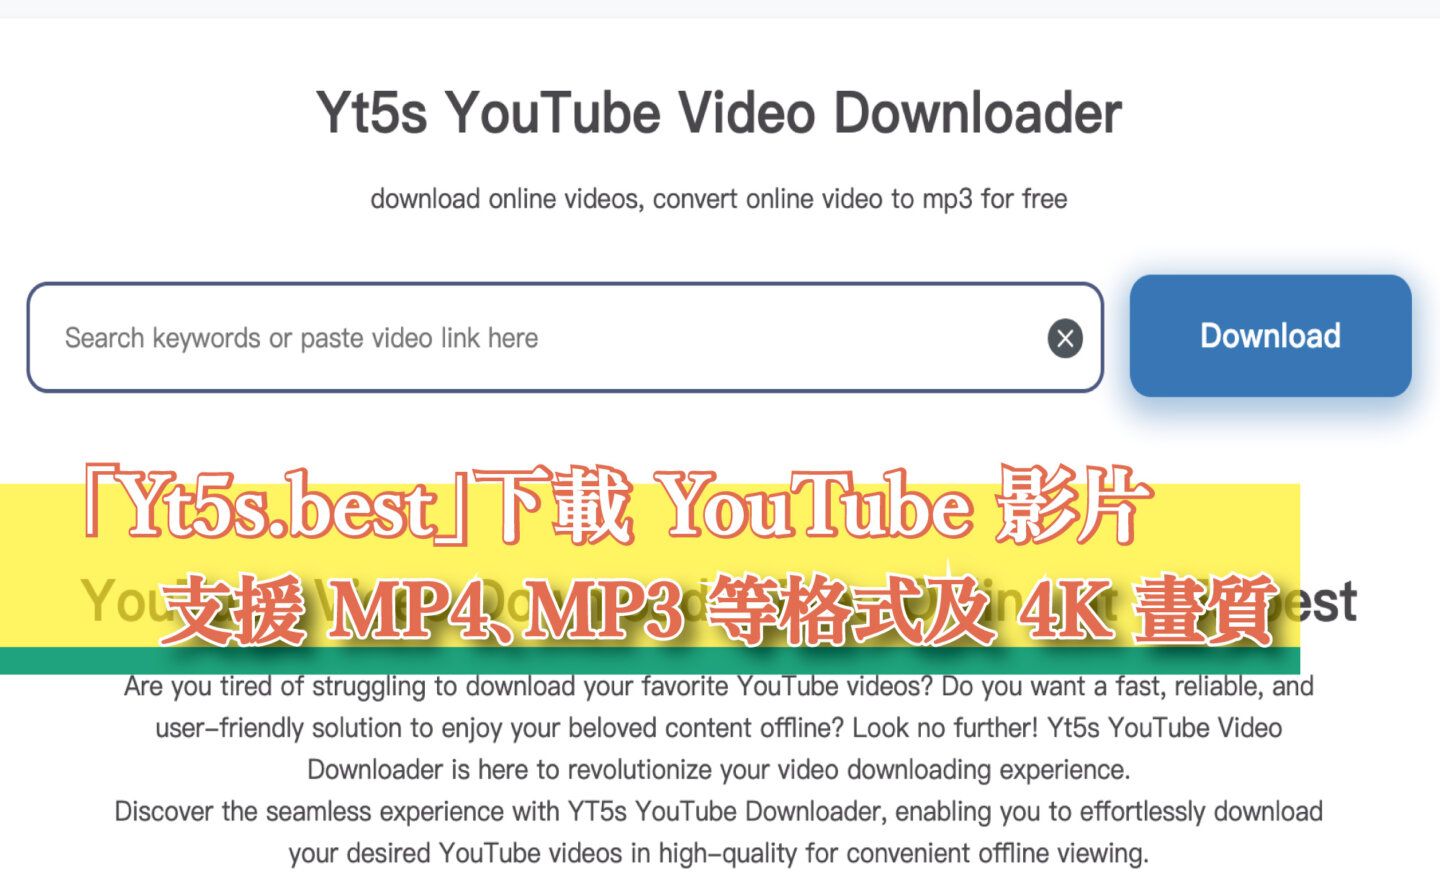 【免費】「Yt5s.best」離線保存 YouTube 影片，支援下載成 MP4、MP3 等多種格式及 4K 畫質